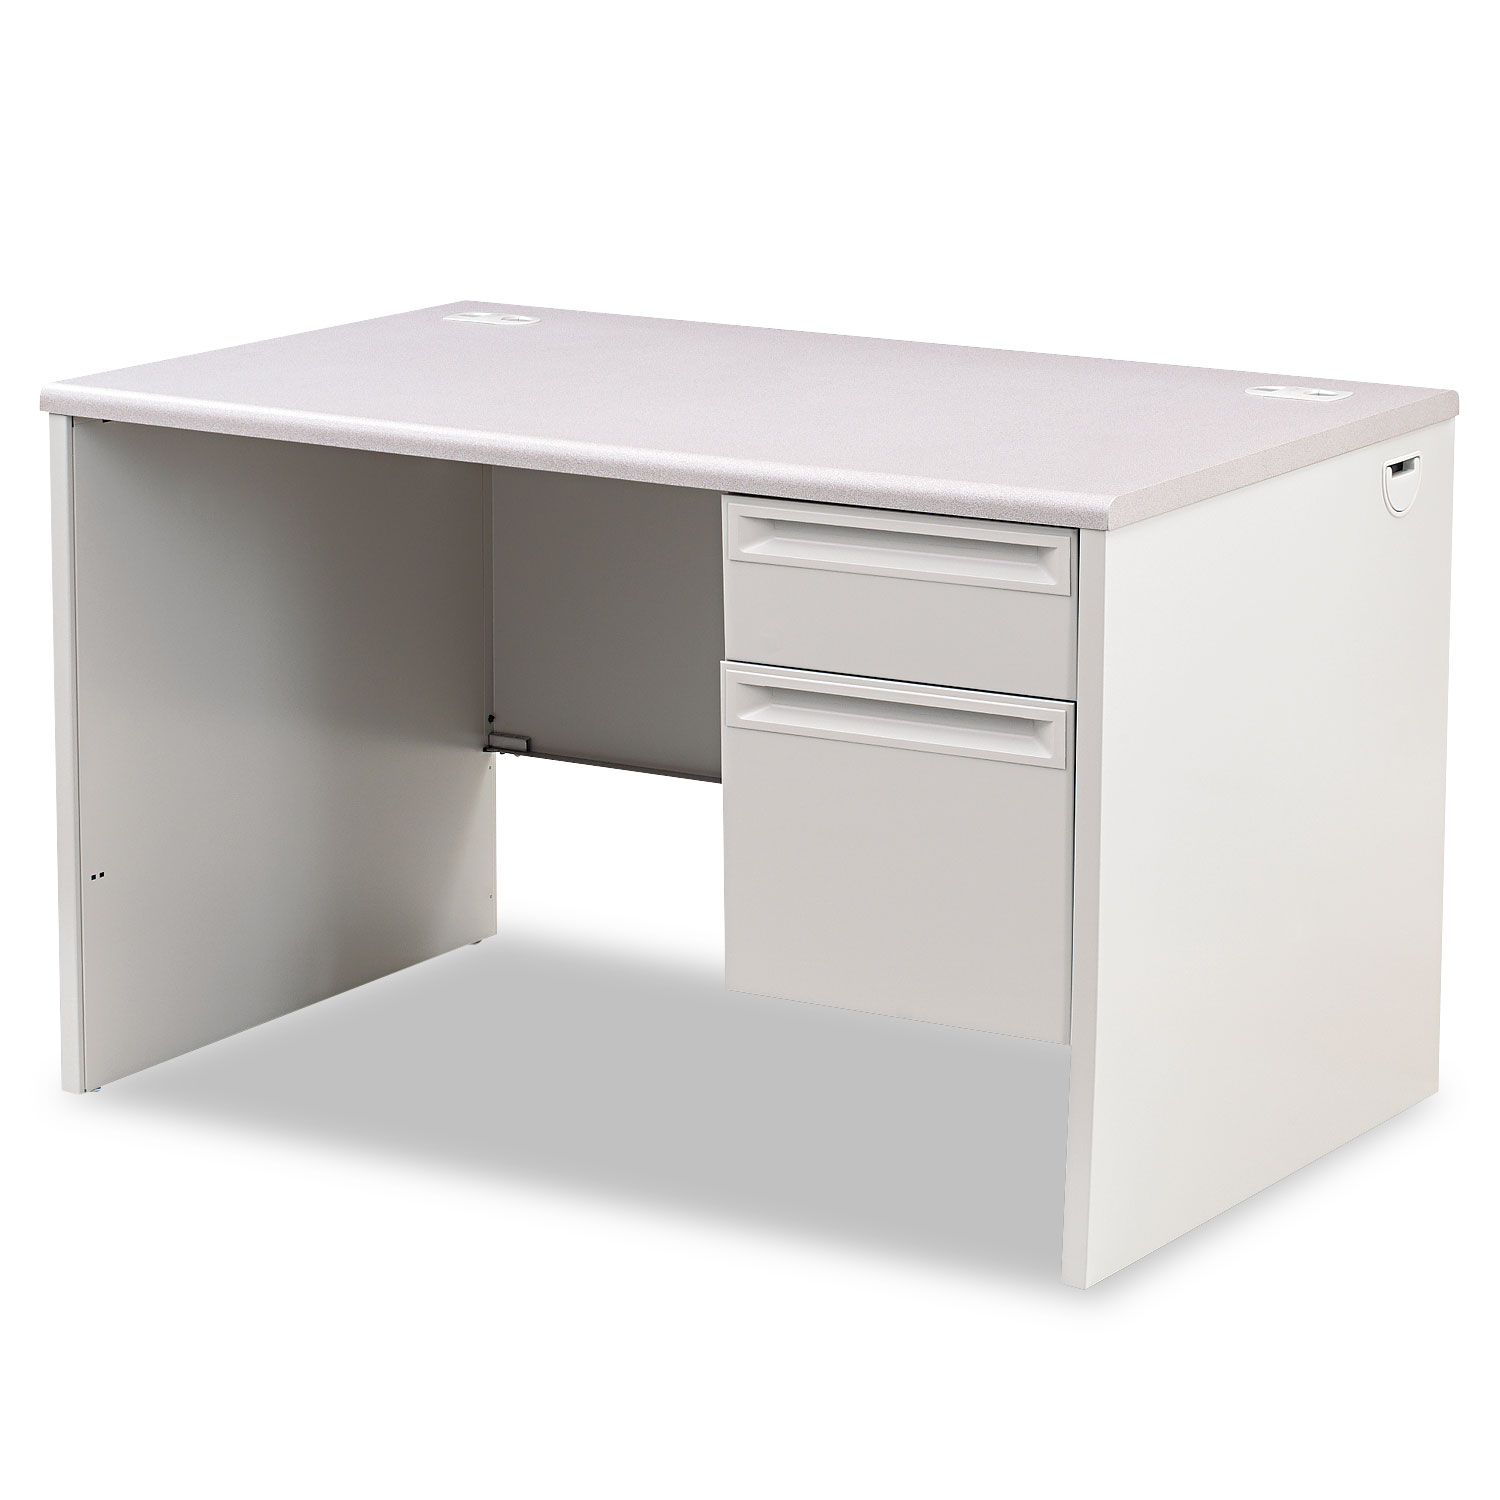  HON H38251.G2.Q 38000 Series Right Pedestal Desk, 48w x 30d x 29.5h, Light Gray (HON38251G2Q) 